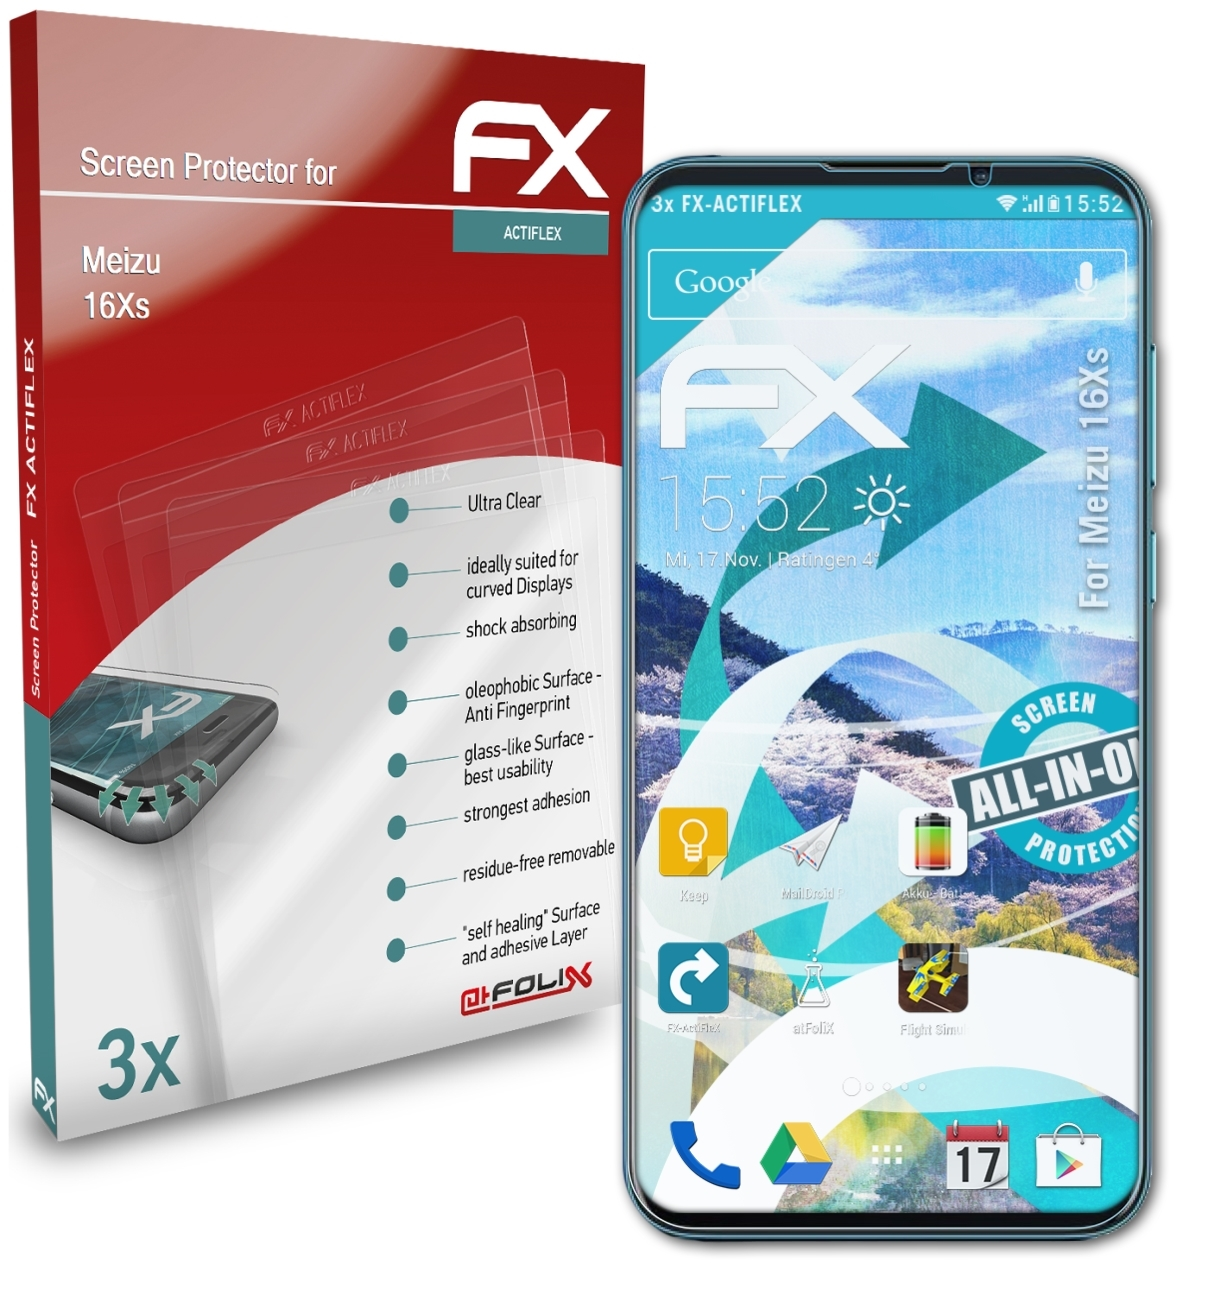 16Xs) Meizu ATFOLIX Displayschutz(für FX-ActiFleX 3x